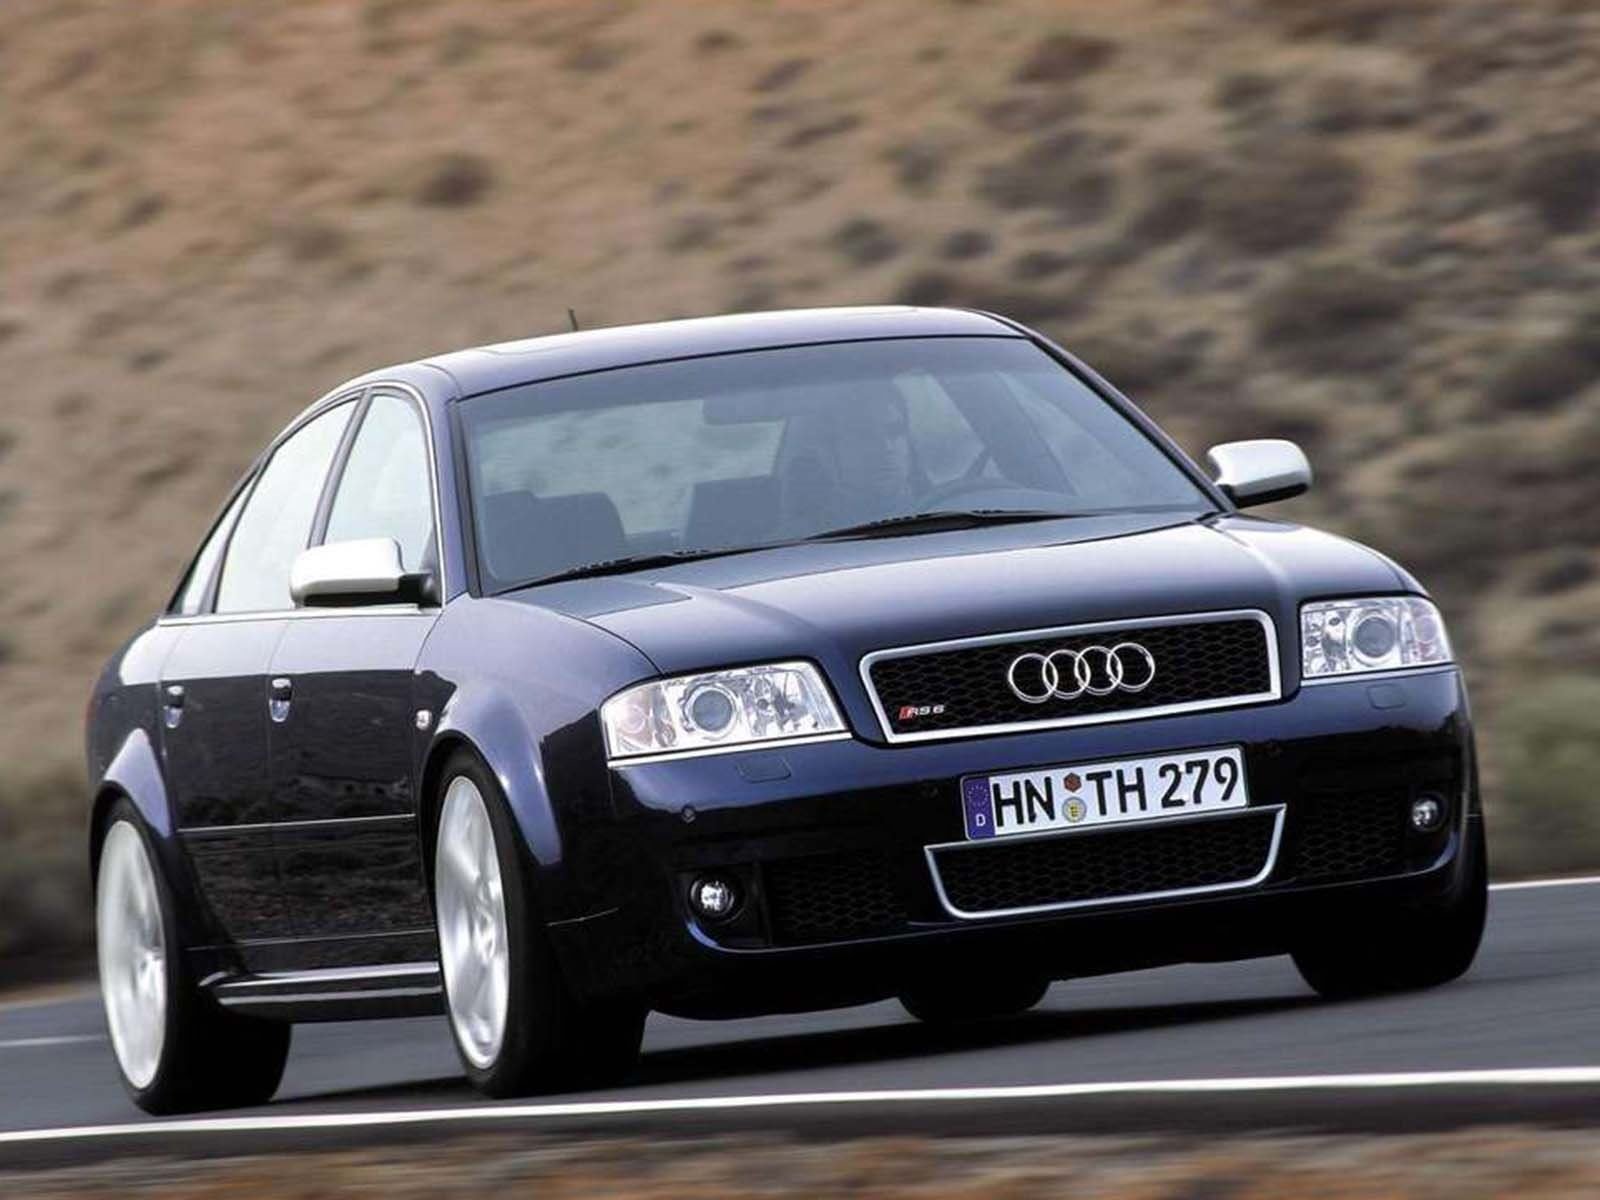 Купить ауди в5. Audi rs6 2002. Ауди rs6 c5. Audi rs6 c5 sedan. Ауди РС 6 2002 седан.